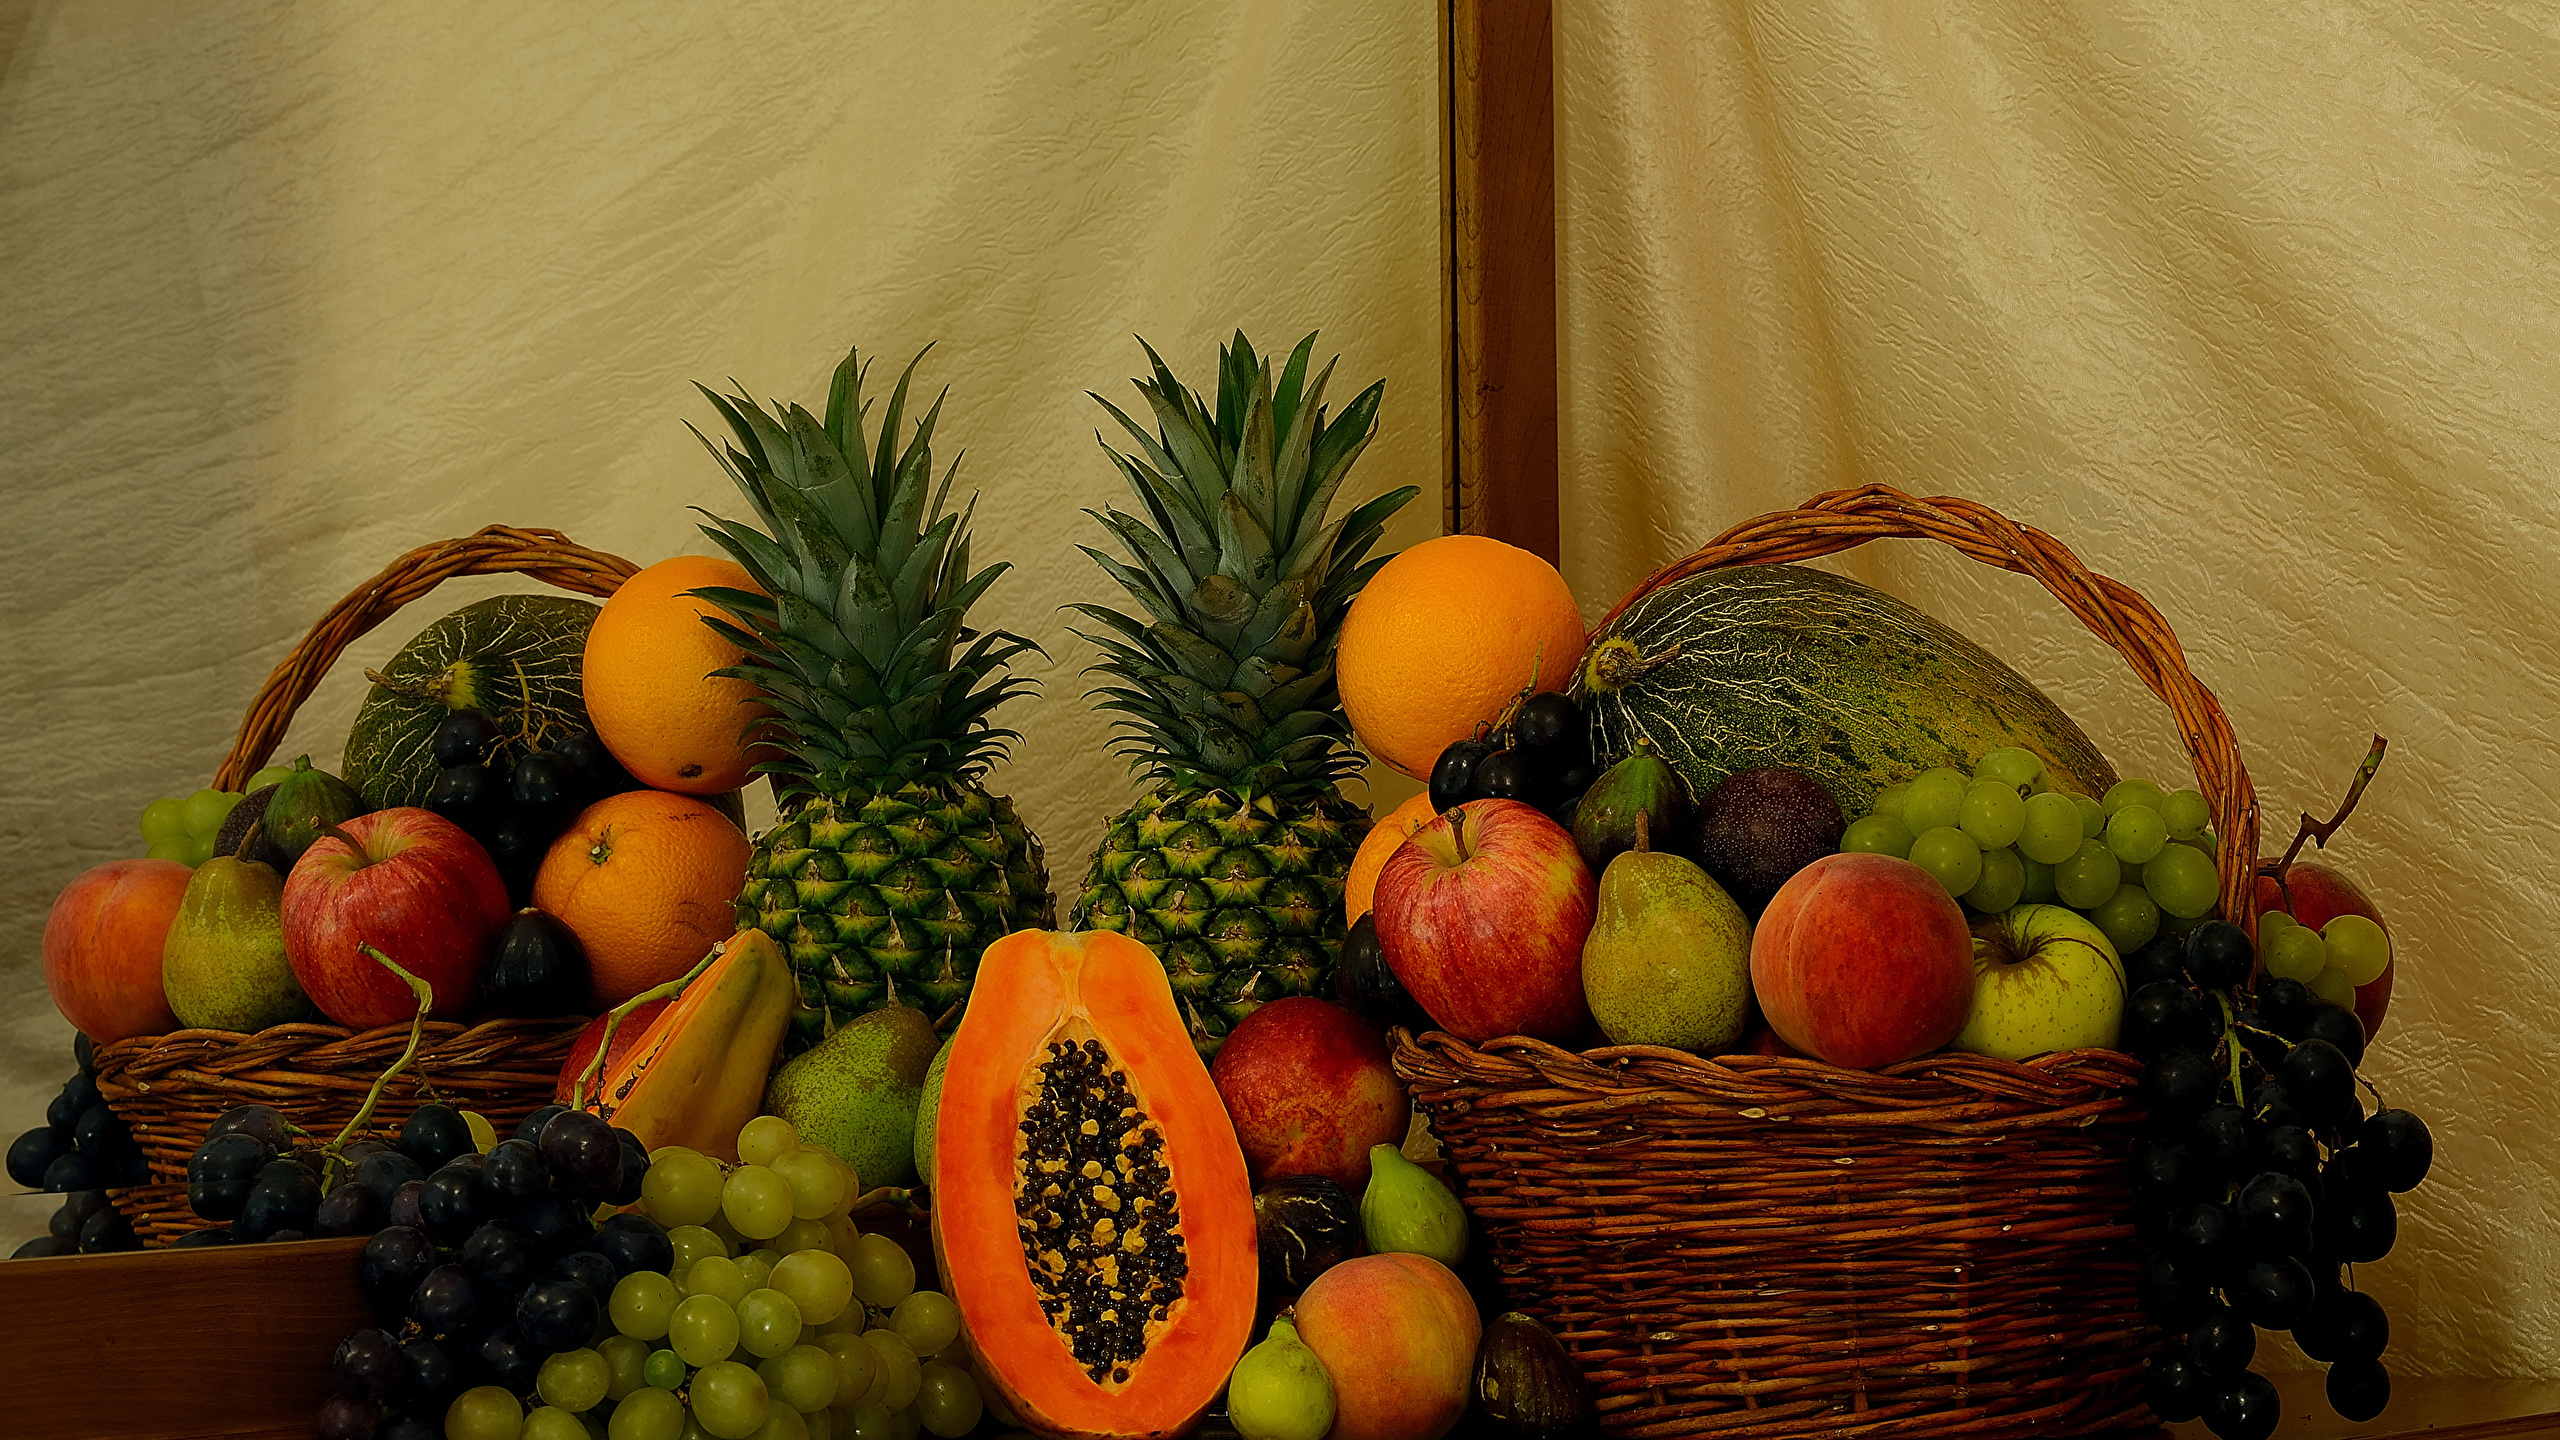 壁紙 2560x1440 桃 りんご 梨 オレンジ ブドウ パイナップル カボチャ 果物 静物画 籠 食品 ダウンロード 写真